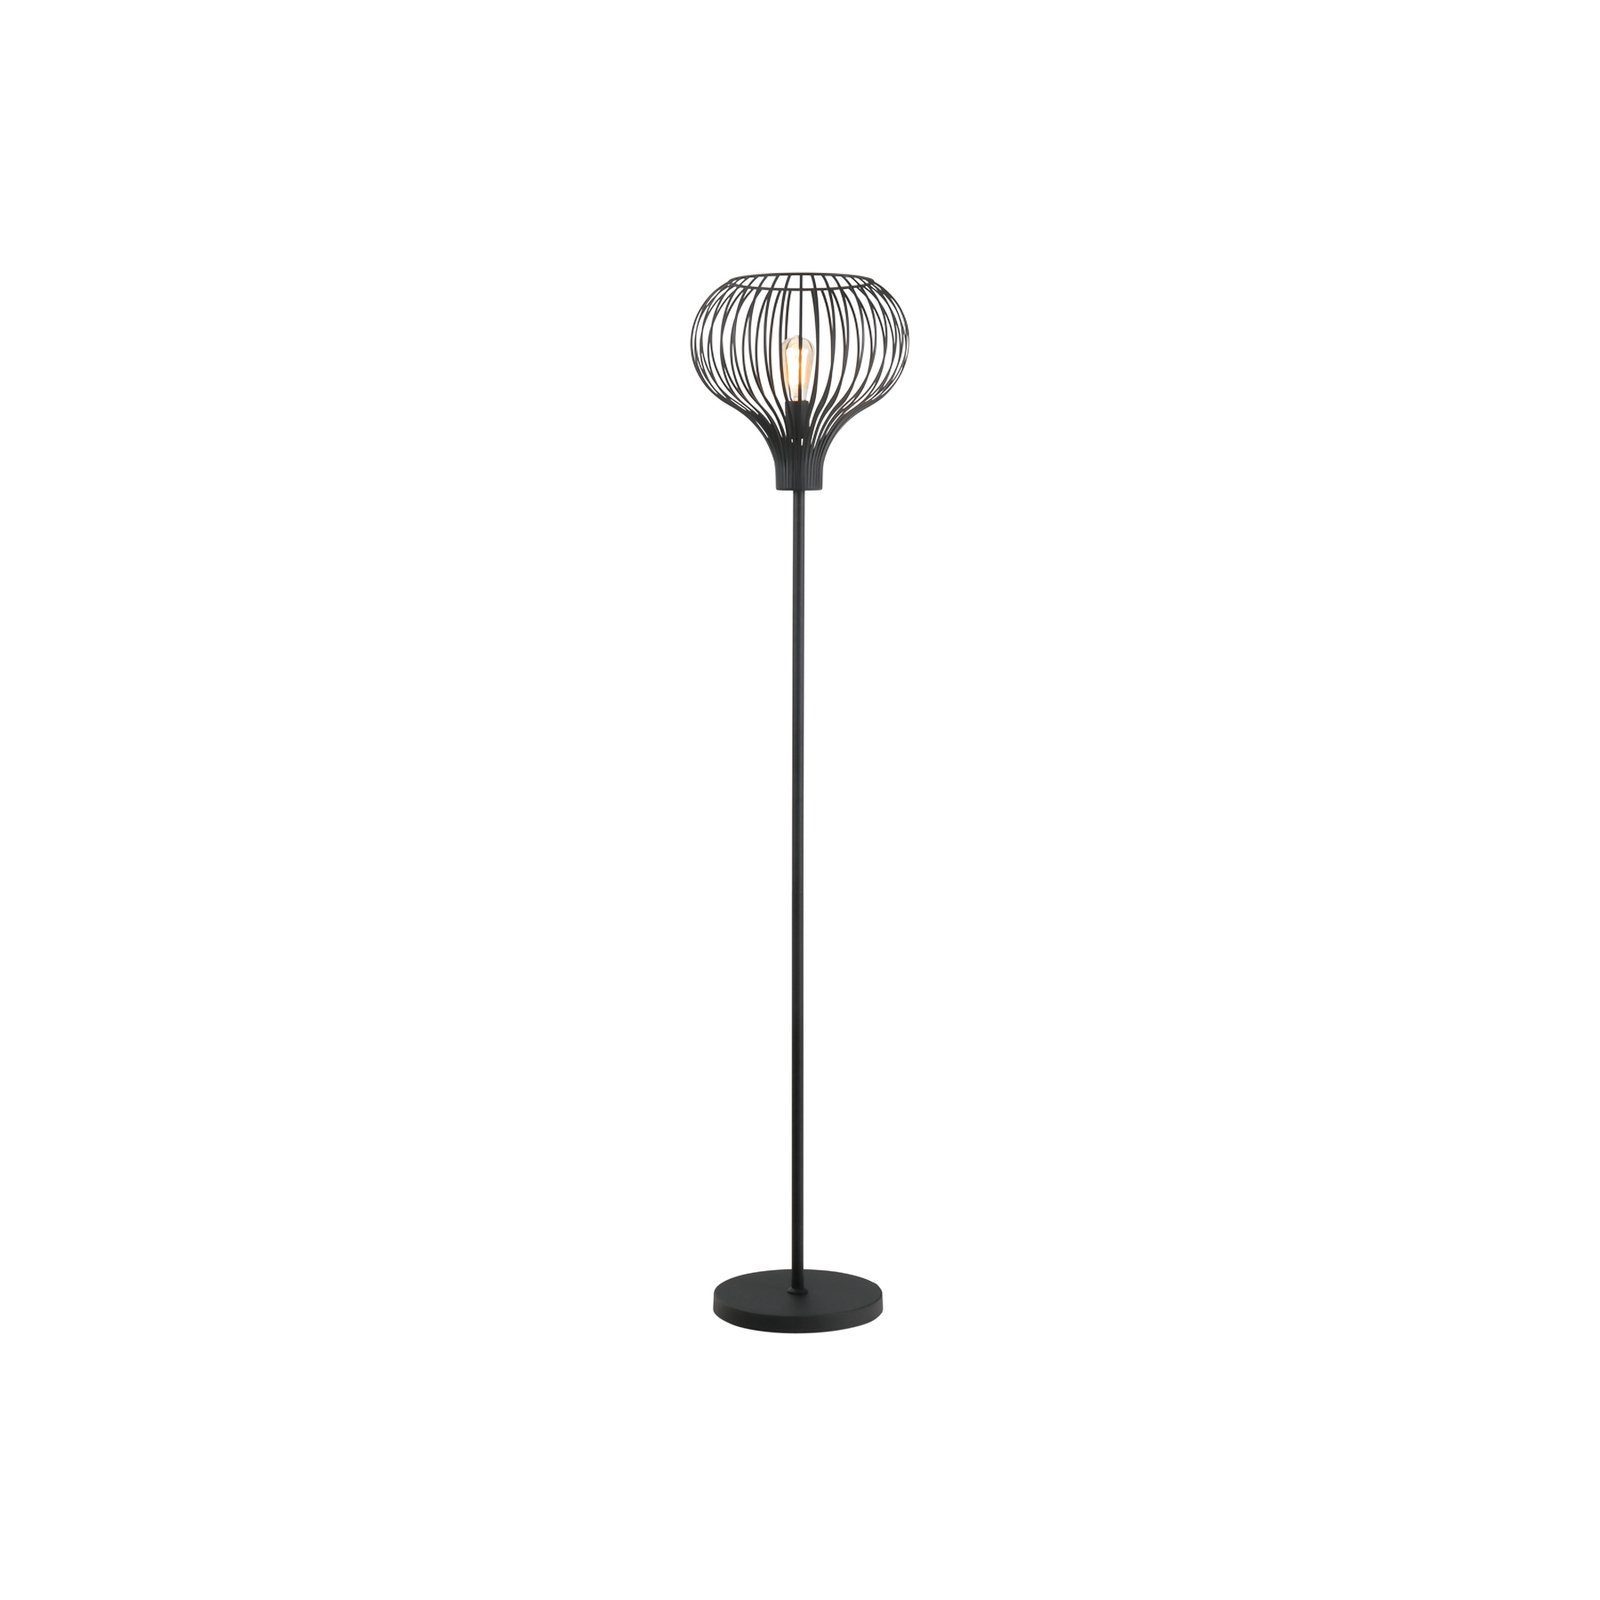 Aglio vloerlamp, hoogte 180 cm, zwart, metaal